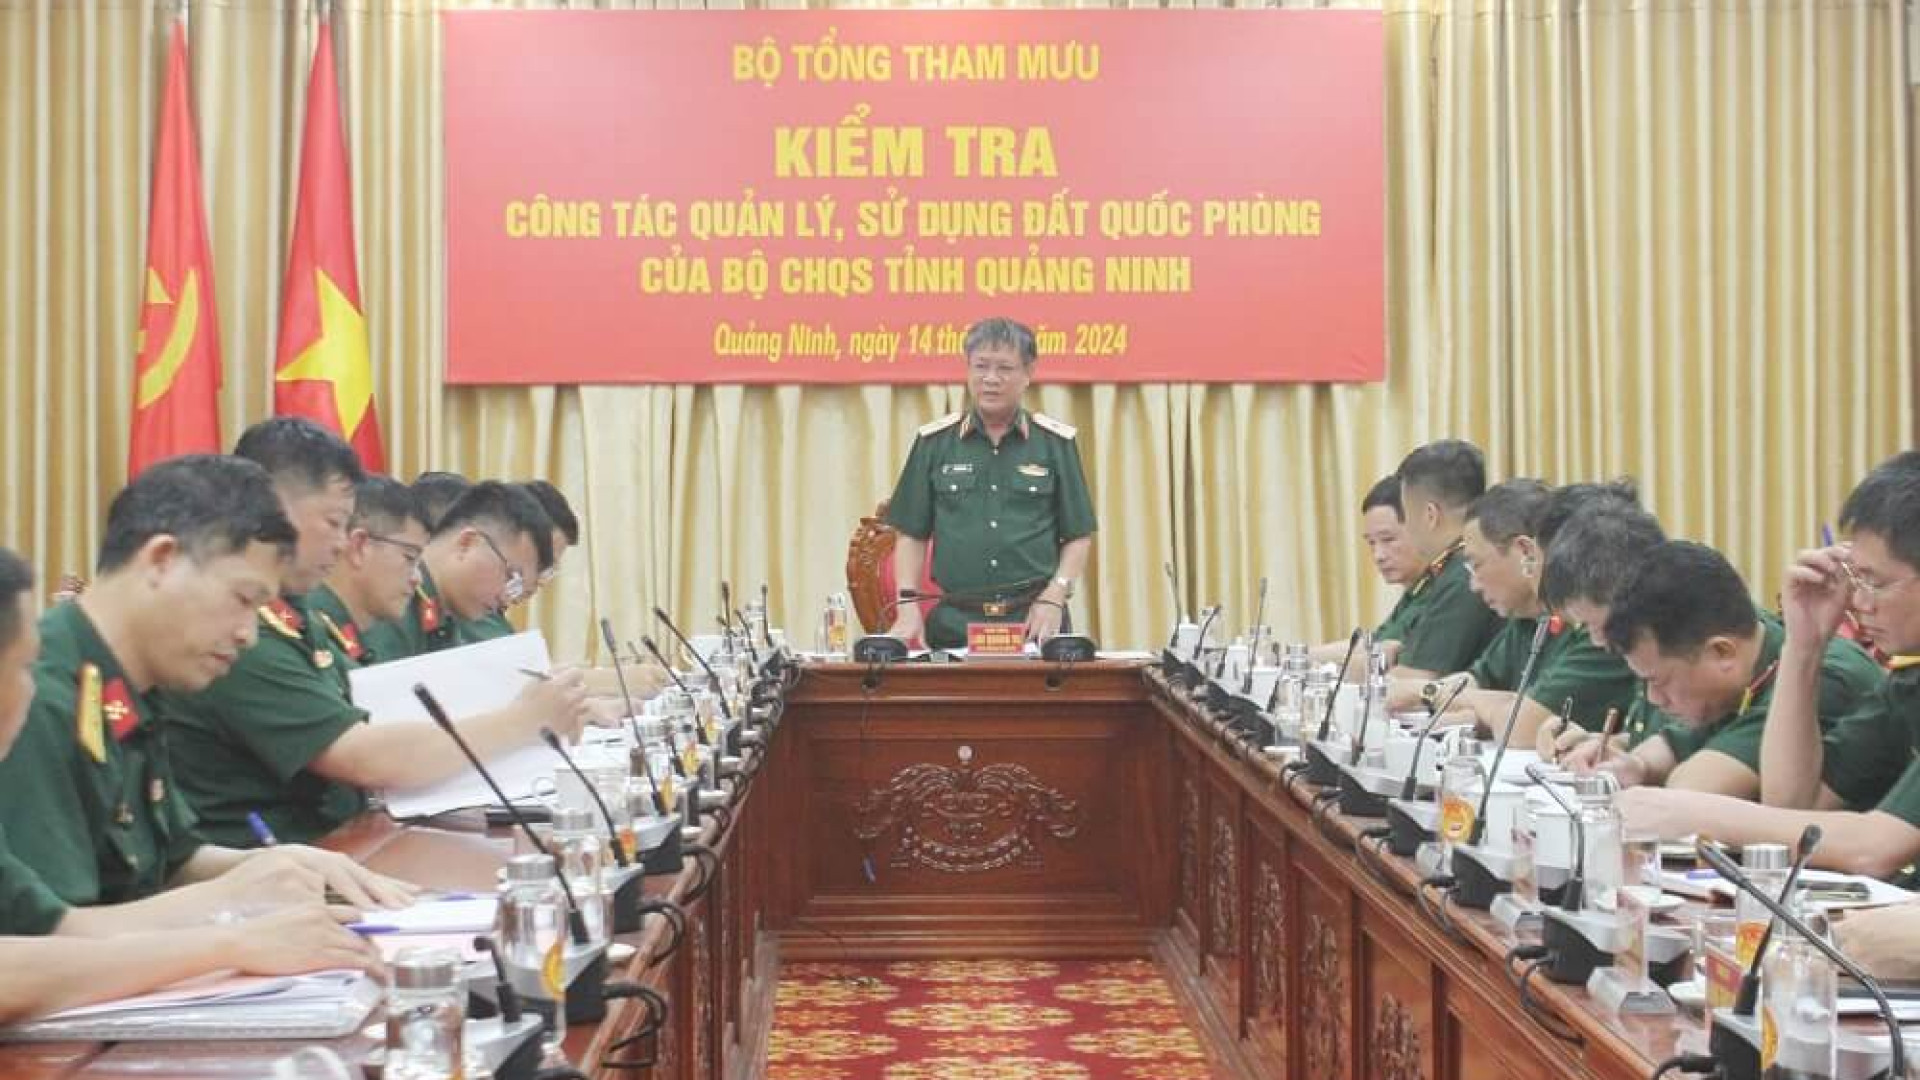 Bộ tổng Tham mưu kiểm tra công tác quản lý, sử dụng đất quốc phòng của Bộ CHQS tỉnh Quảng Ninh